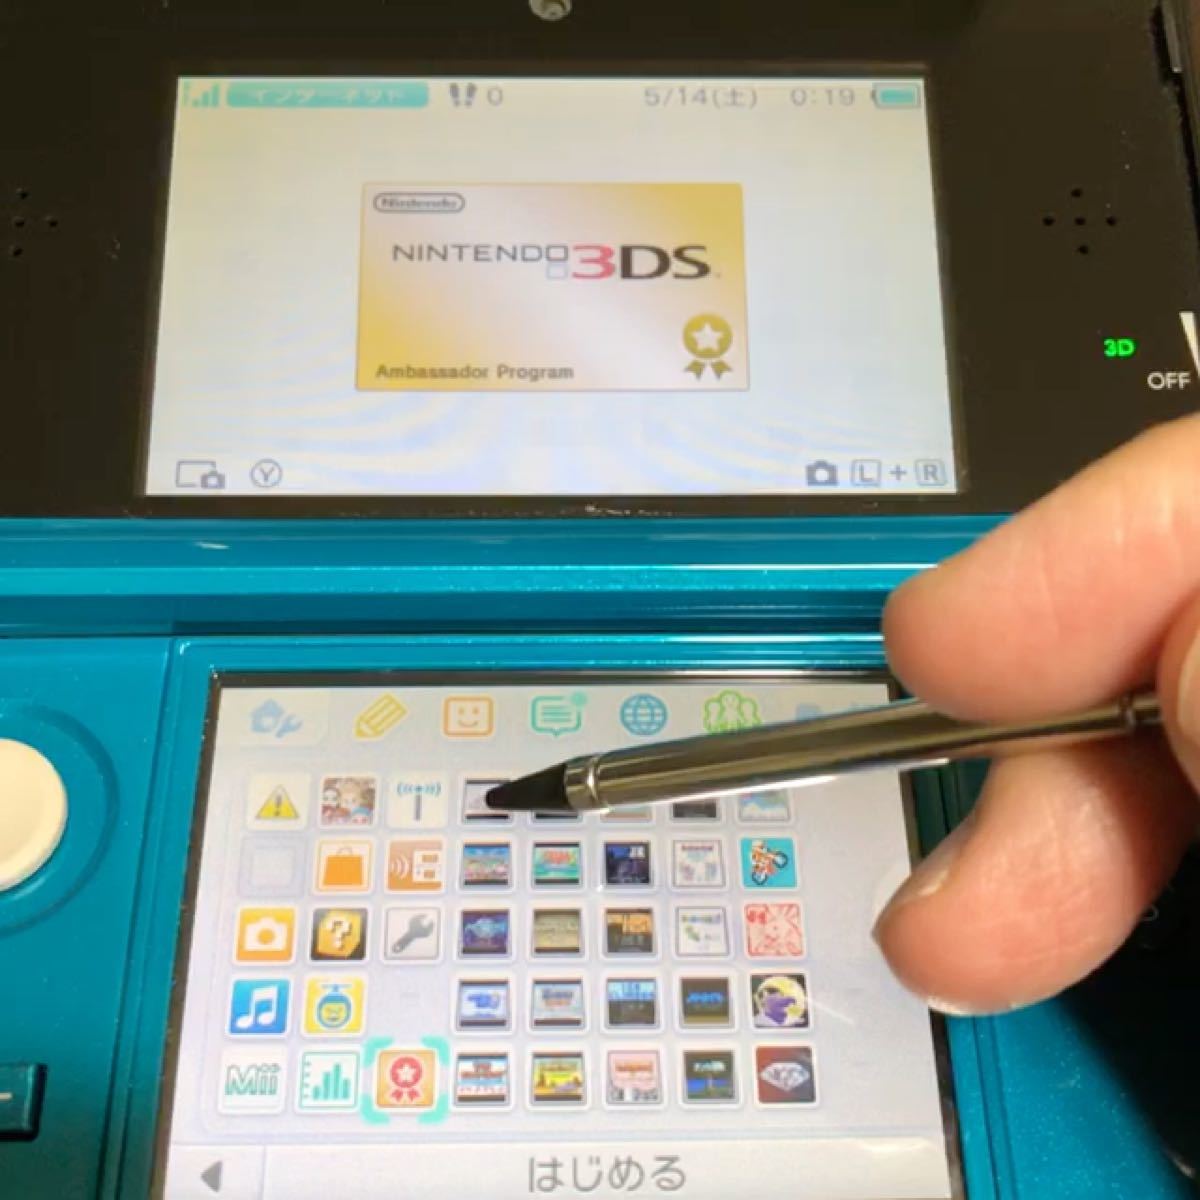 3DS アンバサダー・プログラム ニンテンドー3DS本体 アクアブルー 美品 レア 貴重 純正ACアダプター付 送料無料 匿名配送